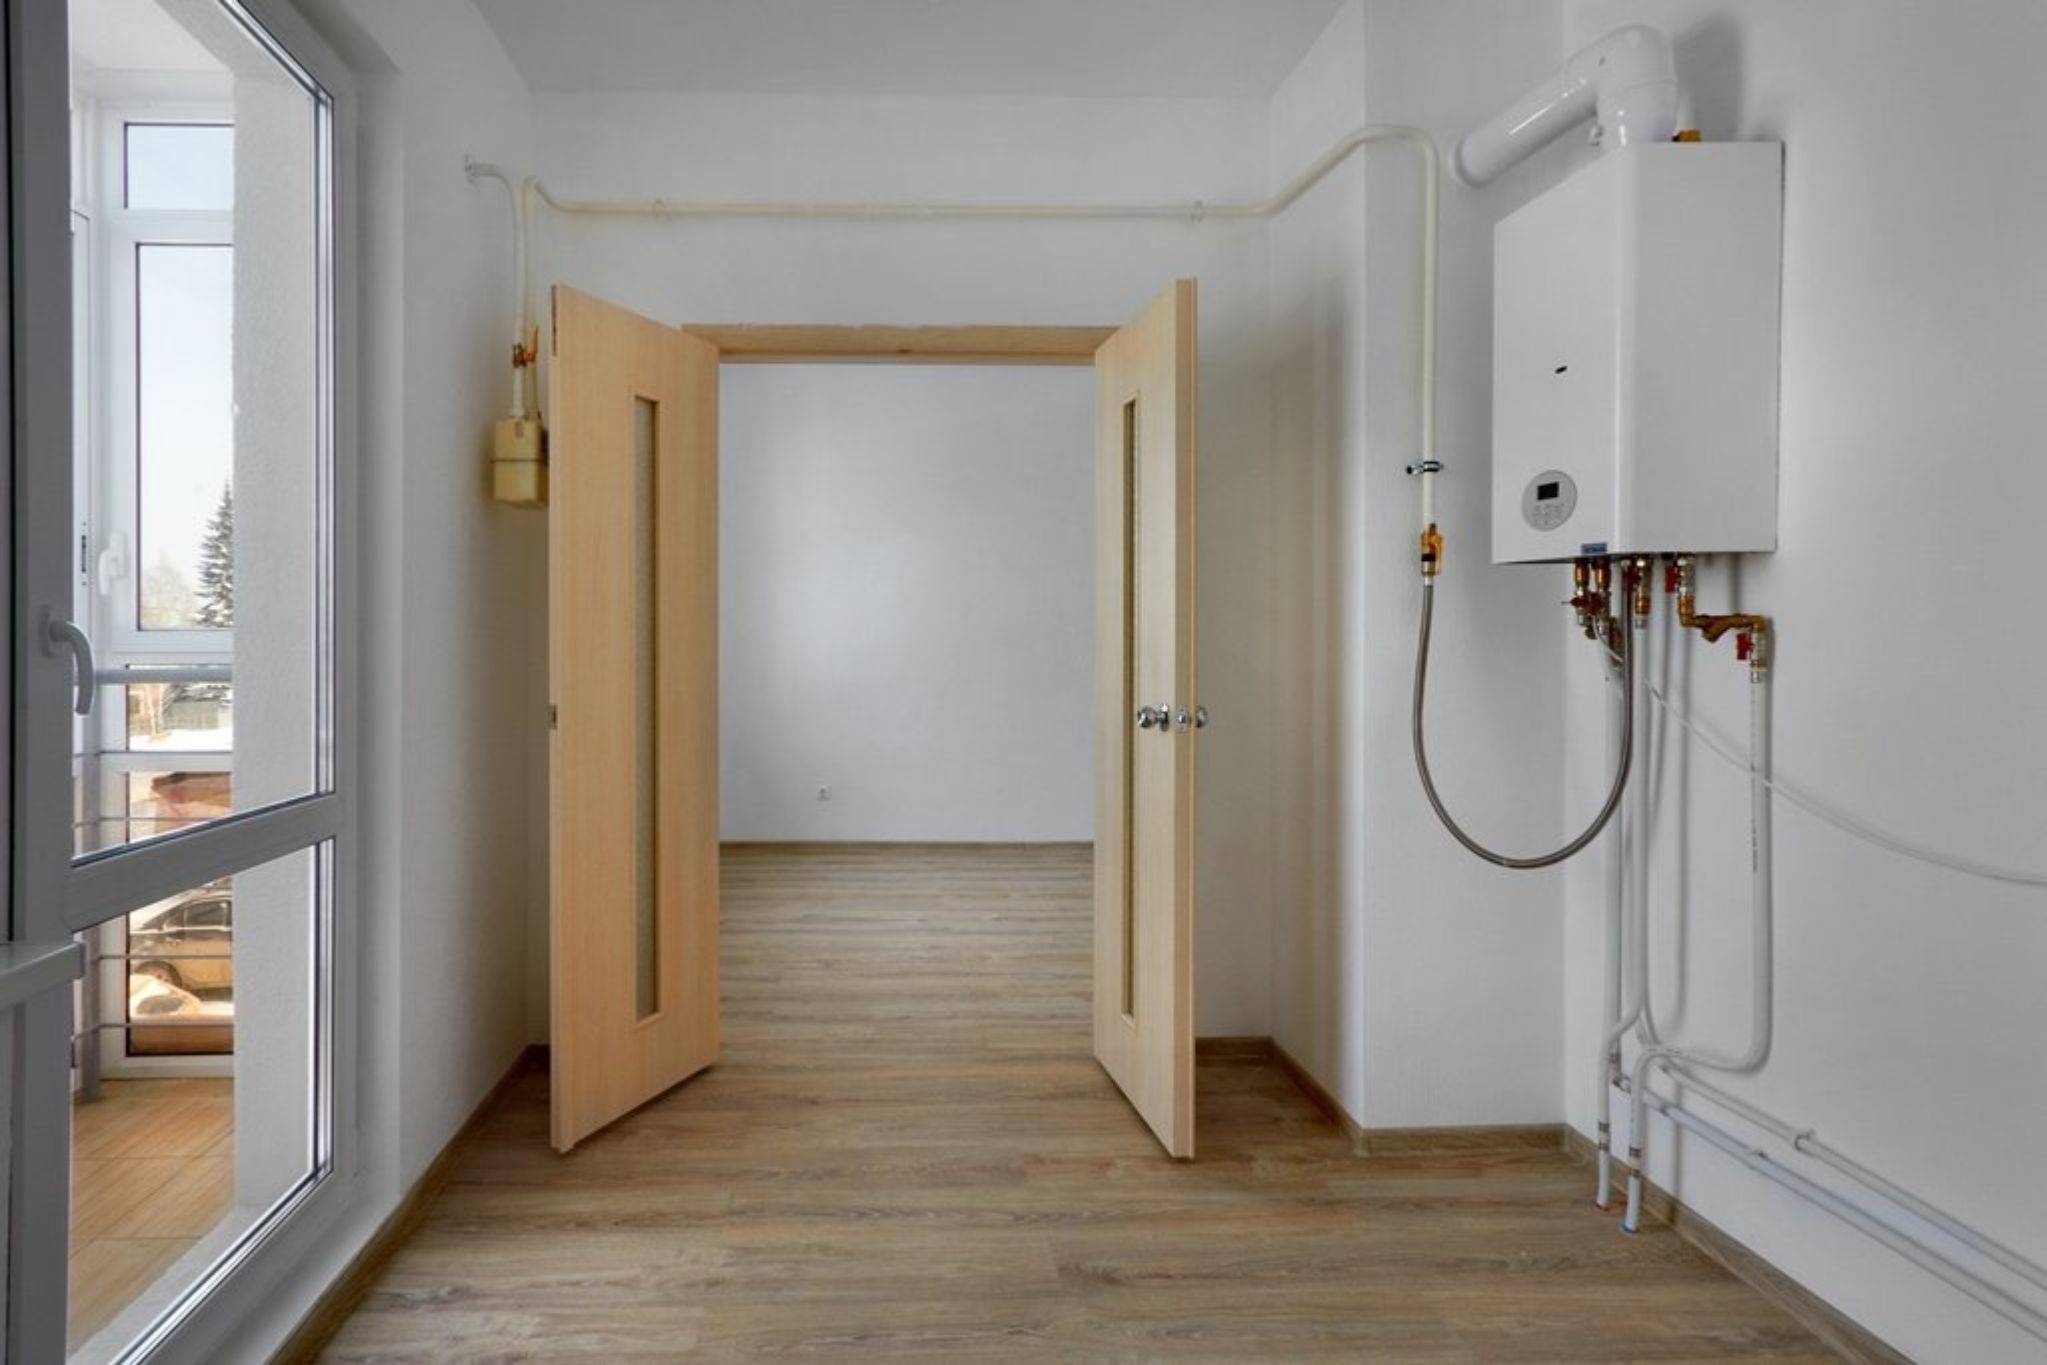 Отопление в квартире: какое лучше на полу, центральное в многоквартирном доме, стояк, температура поквартирной газовой системы